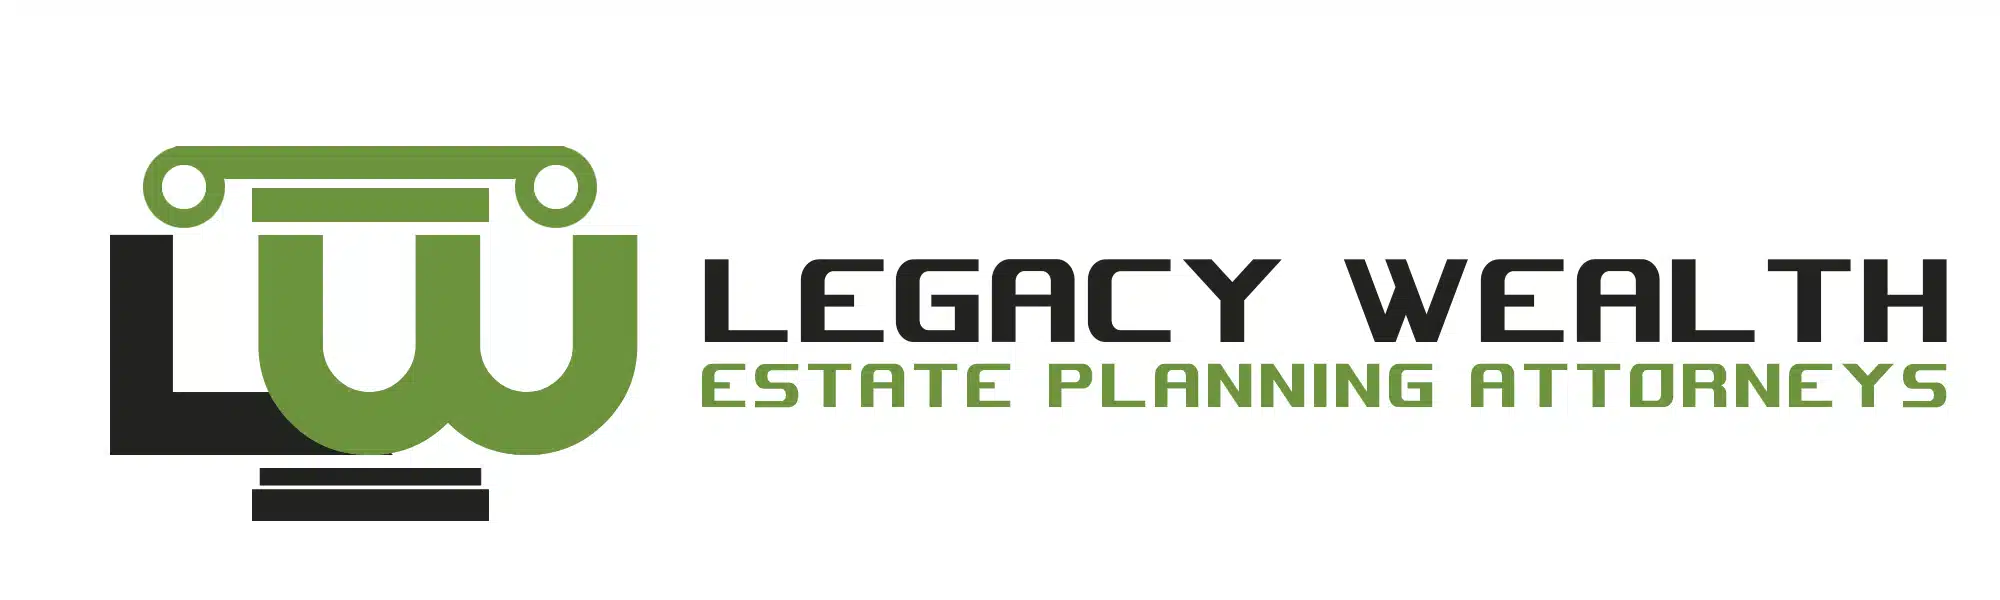 Legacy-Wealth-4.webp